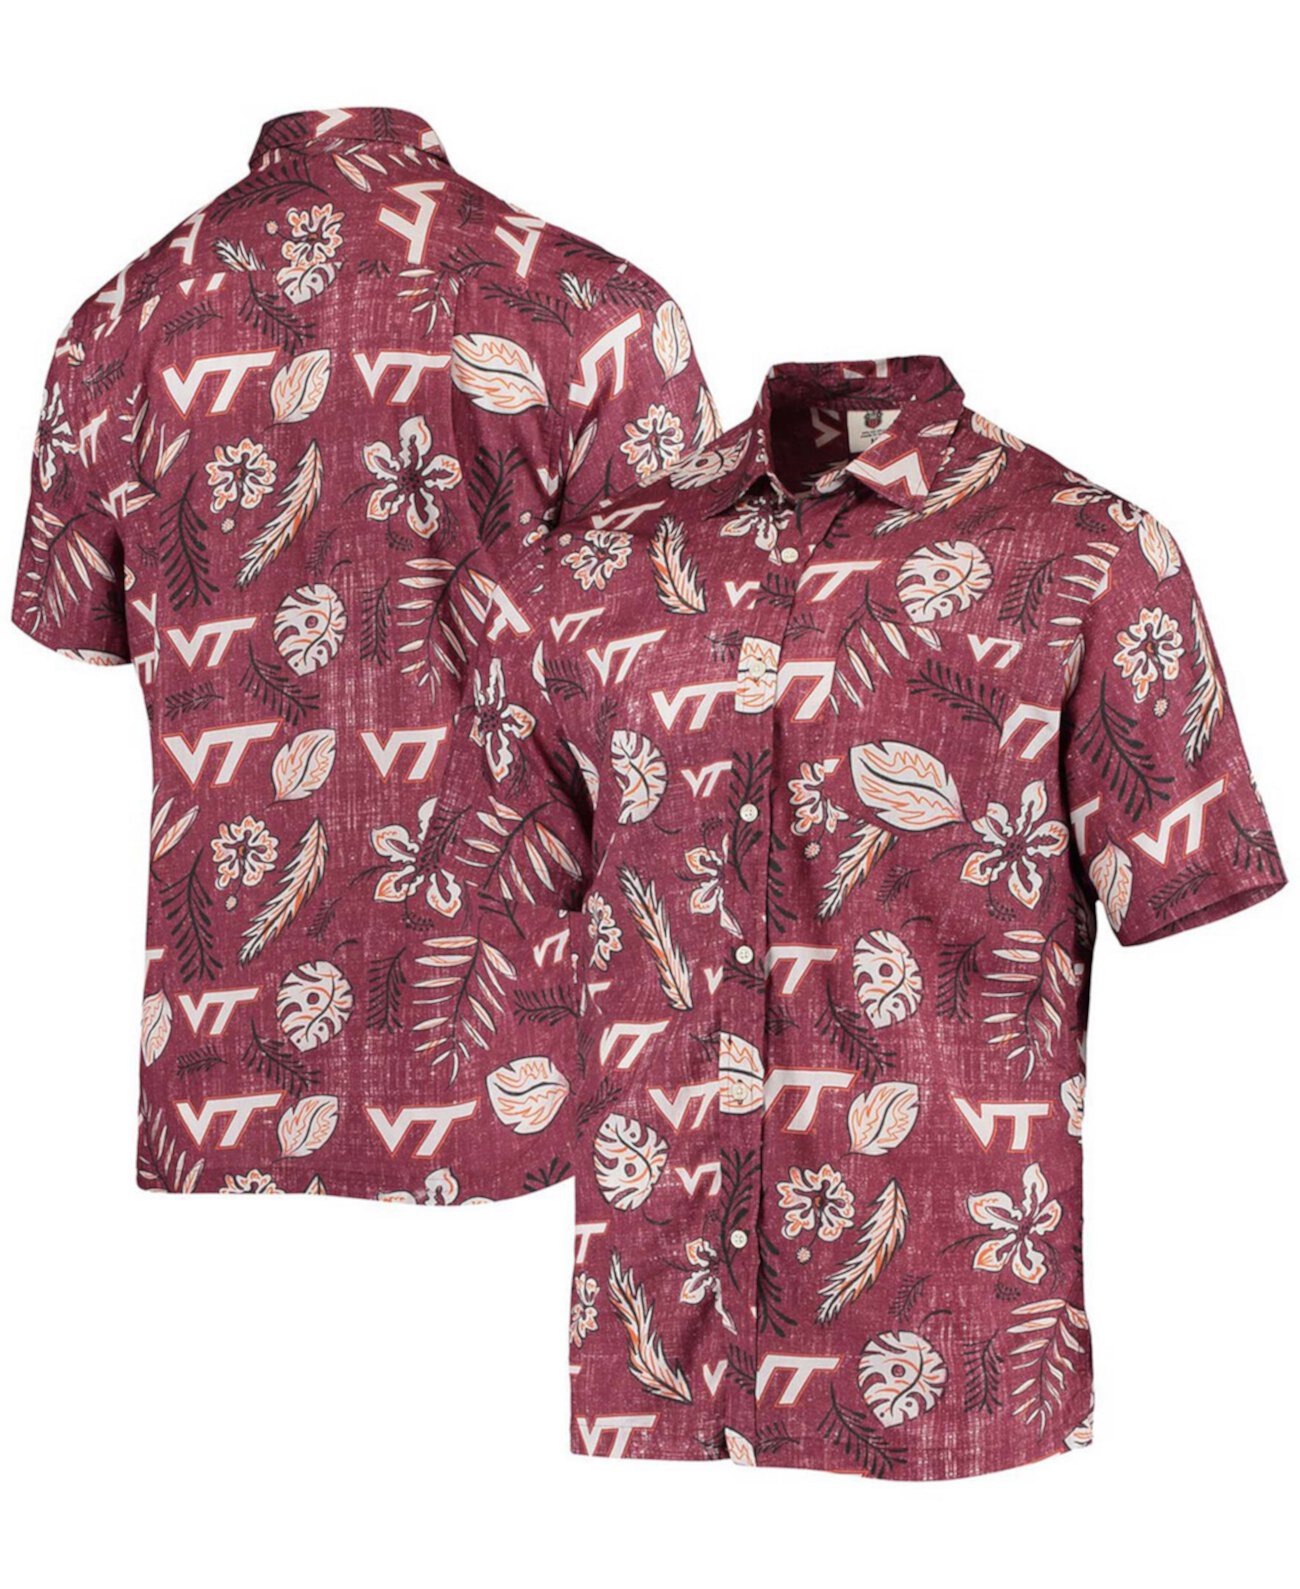 Мужская рубашка Maroon Virginia Tech Hokies с винтажным цветочным принтом на пуговицах Wes & Willy